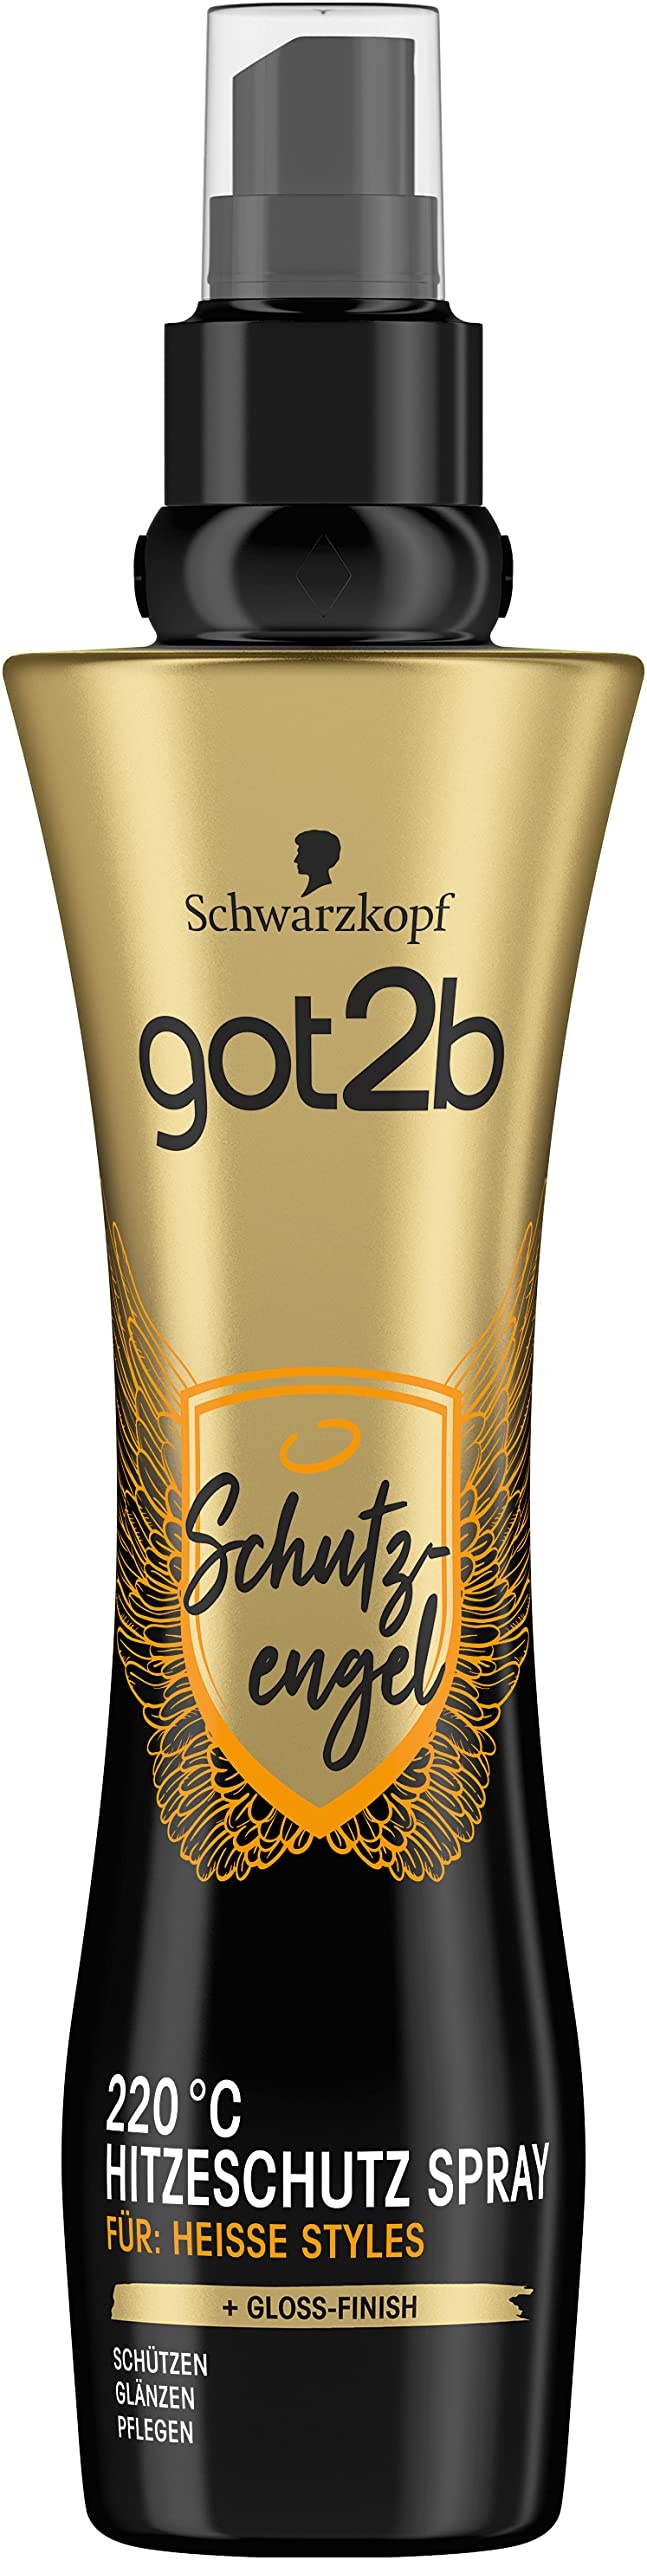 got2b Hitzeschutz-Spray Schutzengel bis 220 °C (200 ml), Styling Lotion beschützt das Haar vor Hitzeschäden, für heiße Styles mit Gloss-Finish, beschwert nicht